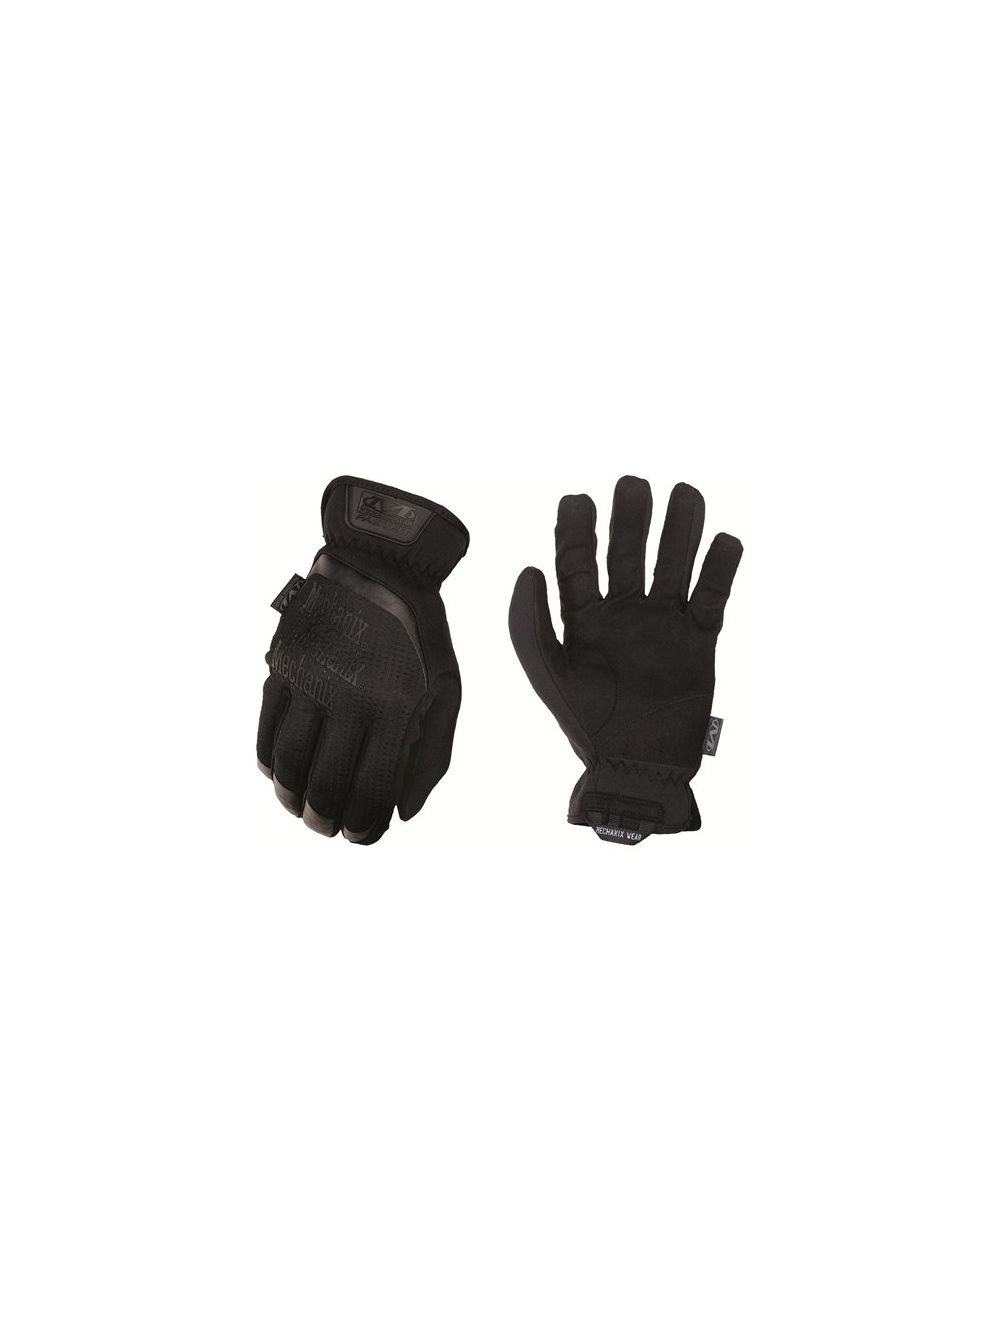 FastFit Work Gloves